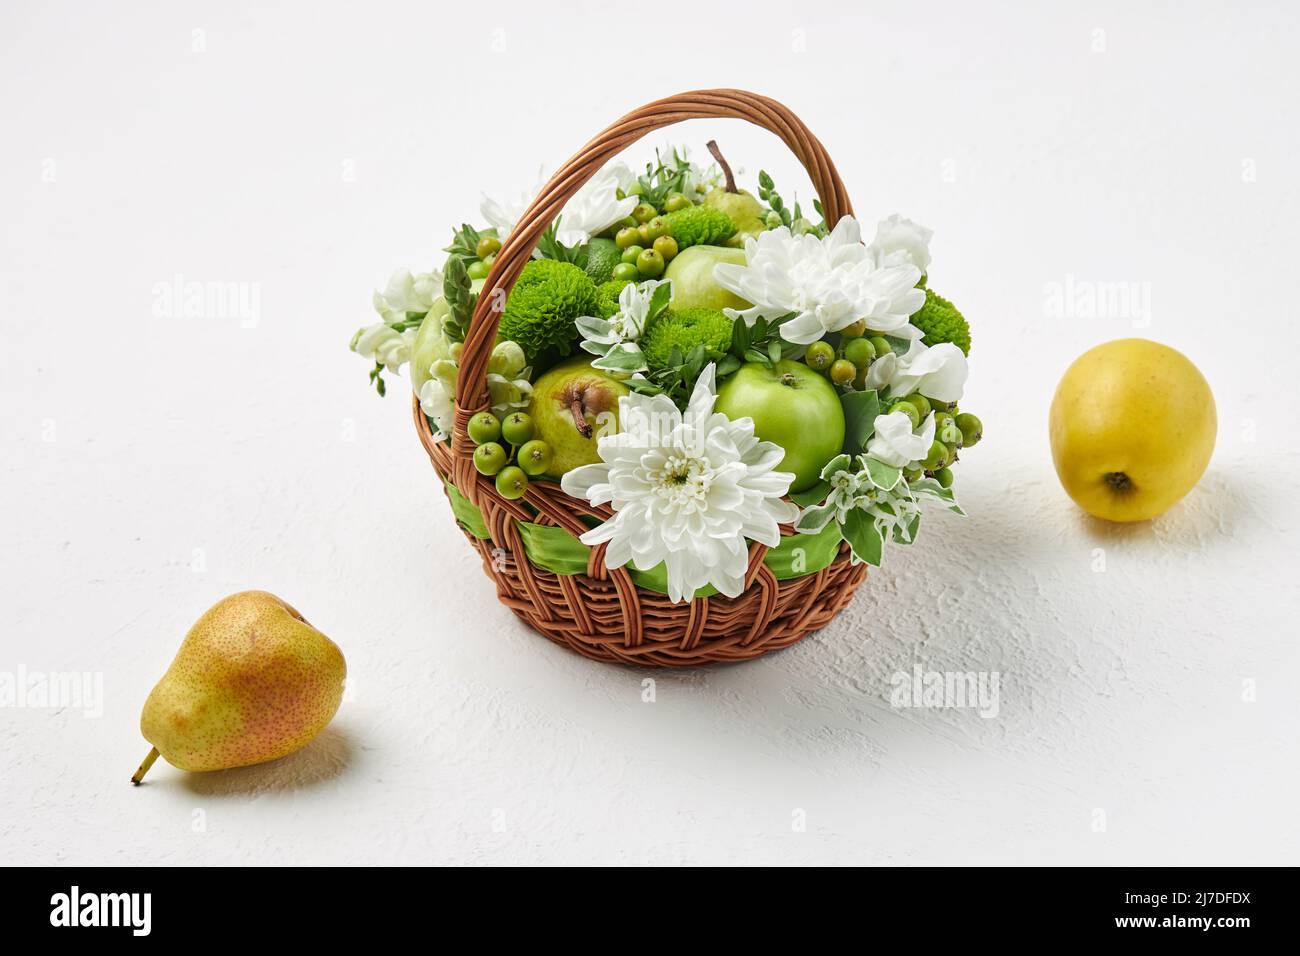 Cesta de mimbre llena de frutas y flores blancas, así como una pera y una manzana sobre un fondo blanco Foto de stock